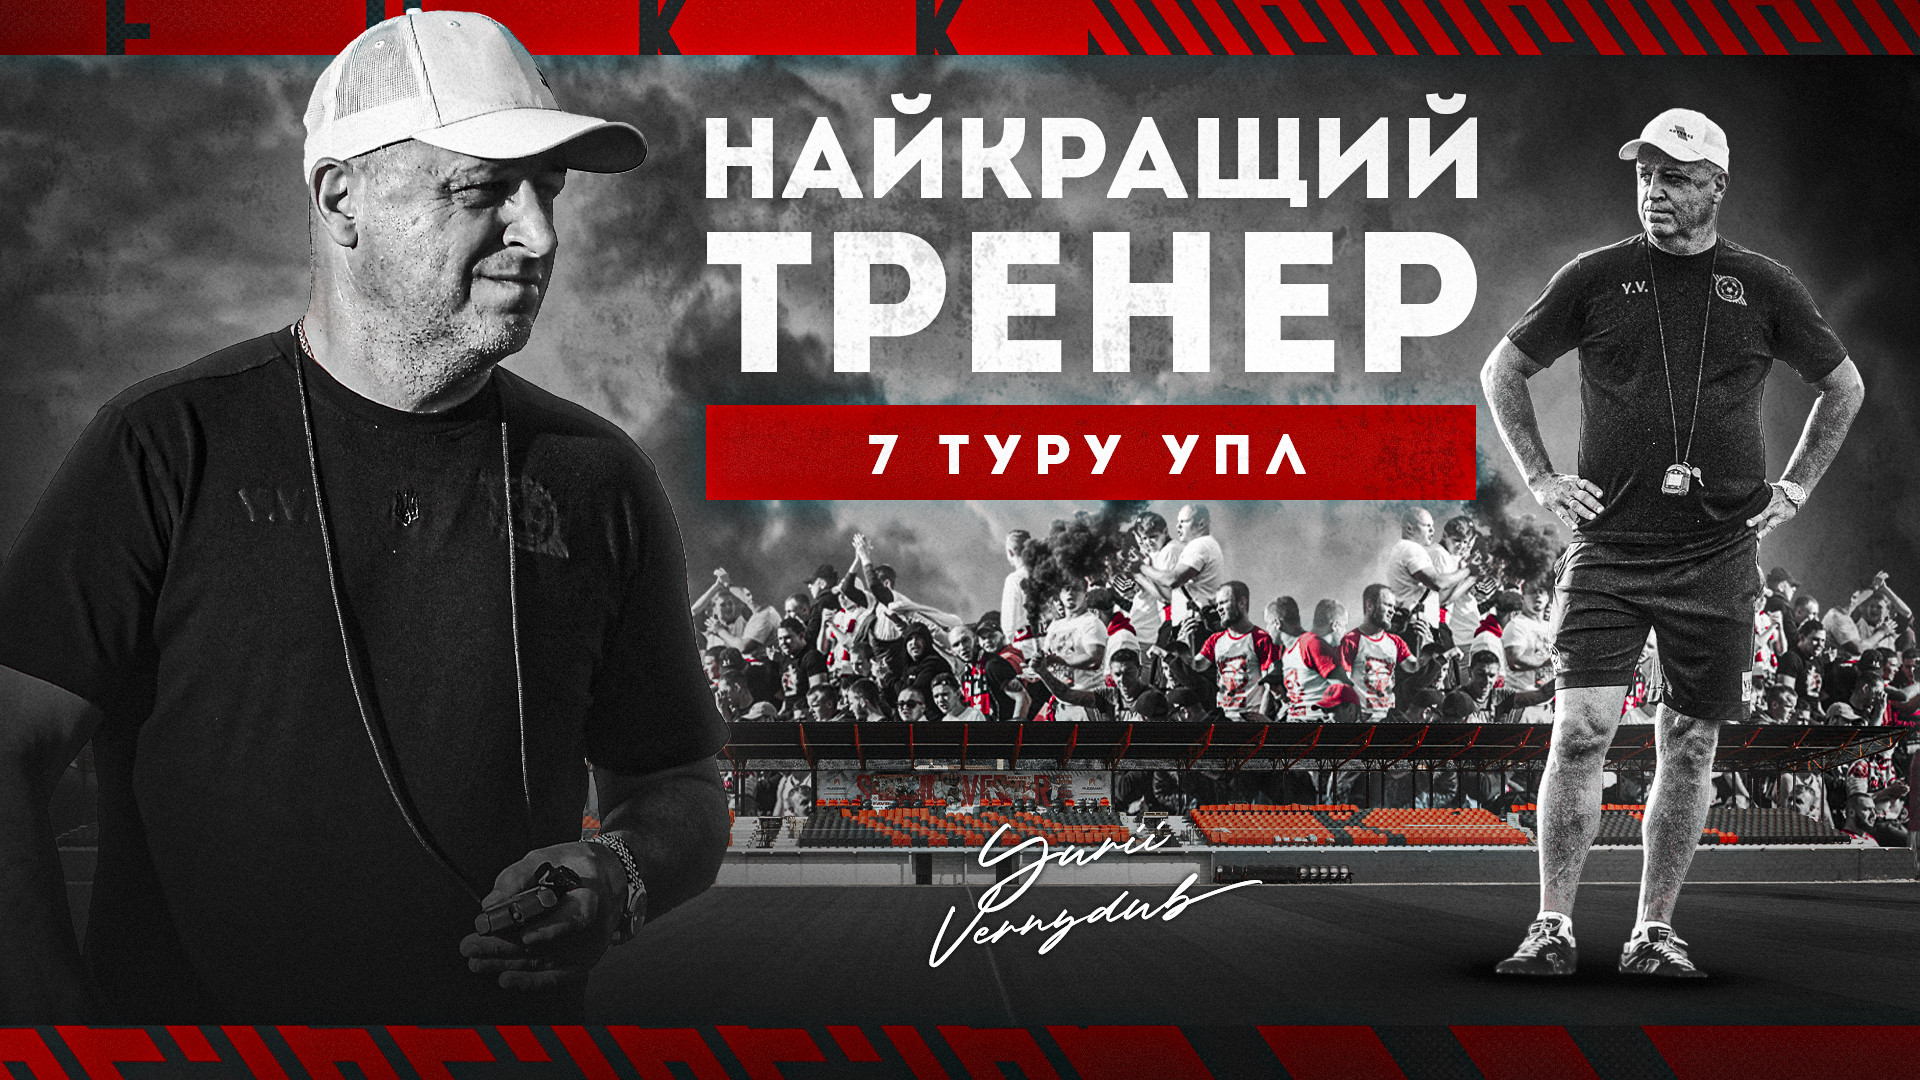 Юрій Вернидуб -  найкращий тренер 7 туру УПЛ!}